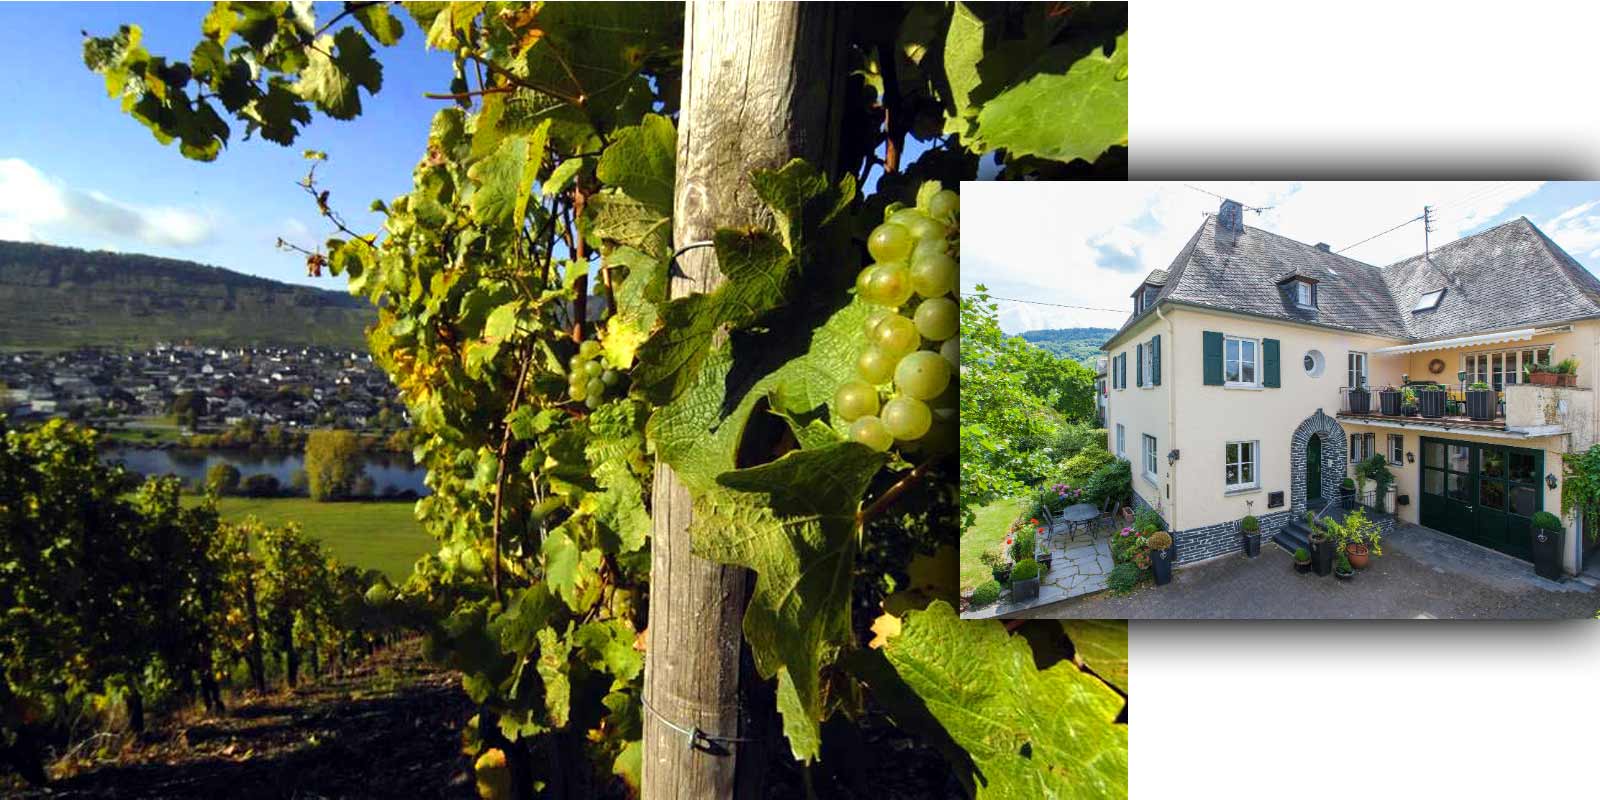 Vinogradnistvo Grans-Fassian - vinorodna regija Moselle Gerhard Grans je vinogradnisko dejavnost prevzel leta 1982 od svojega oceta Matthiasa in razsiril 4 ha povrsine vinogradov na danasnjih 9,5 ha, od katerih je 88 % zasajenih z rizlingom, 10 % belim pinotom in 2 % sivim pinotom. Najboljse lege kleti so tudi razvrscene lege - uvrscene so v najvisjo kategorijo pridelave.